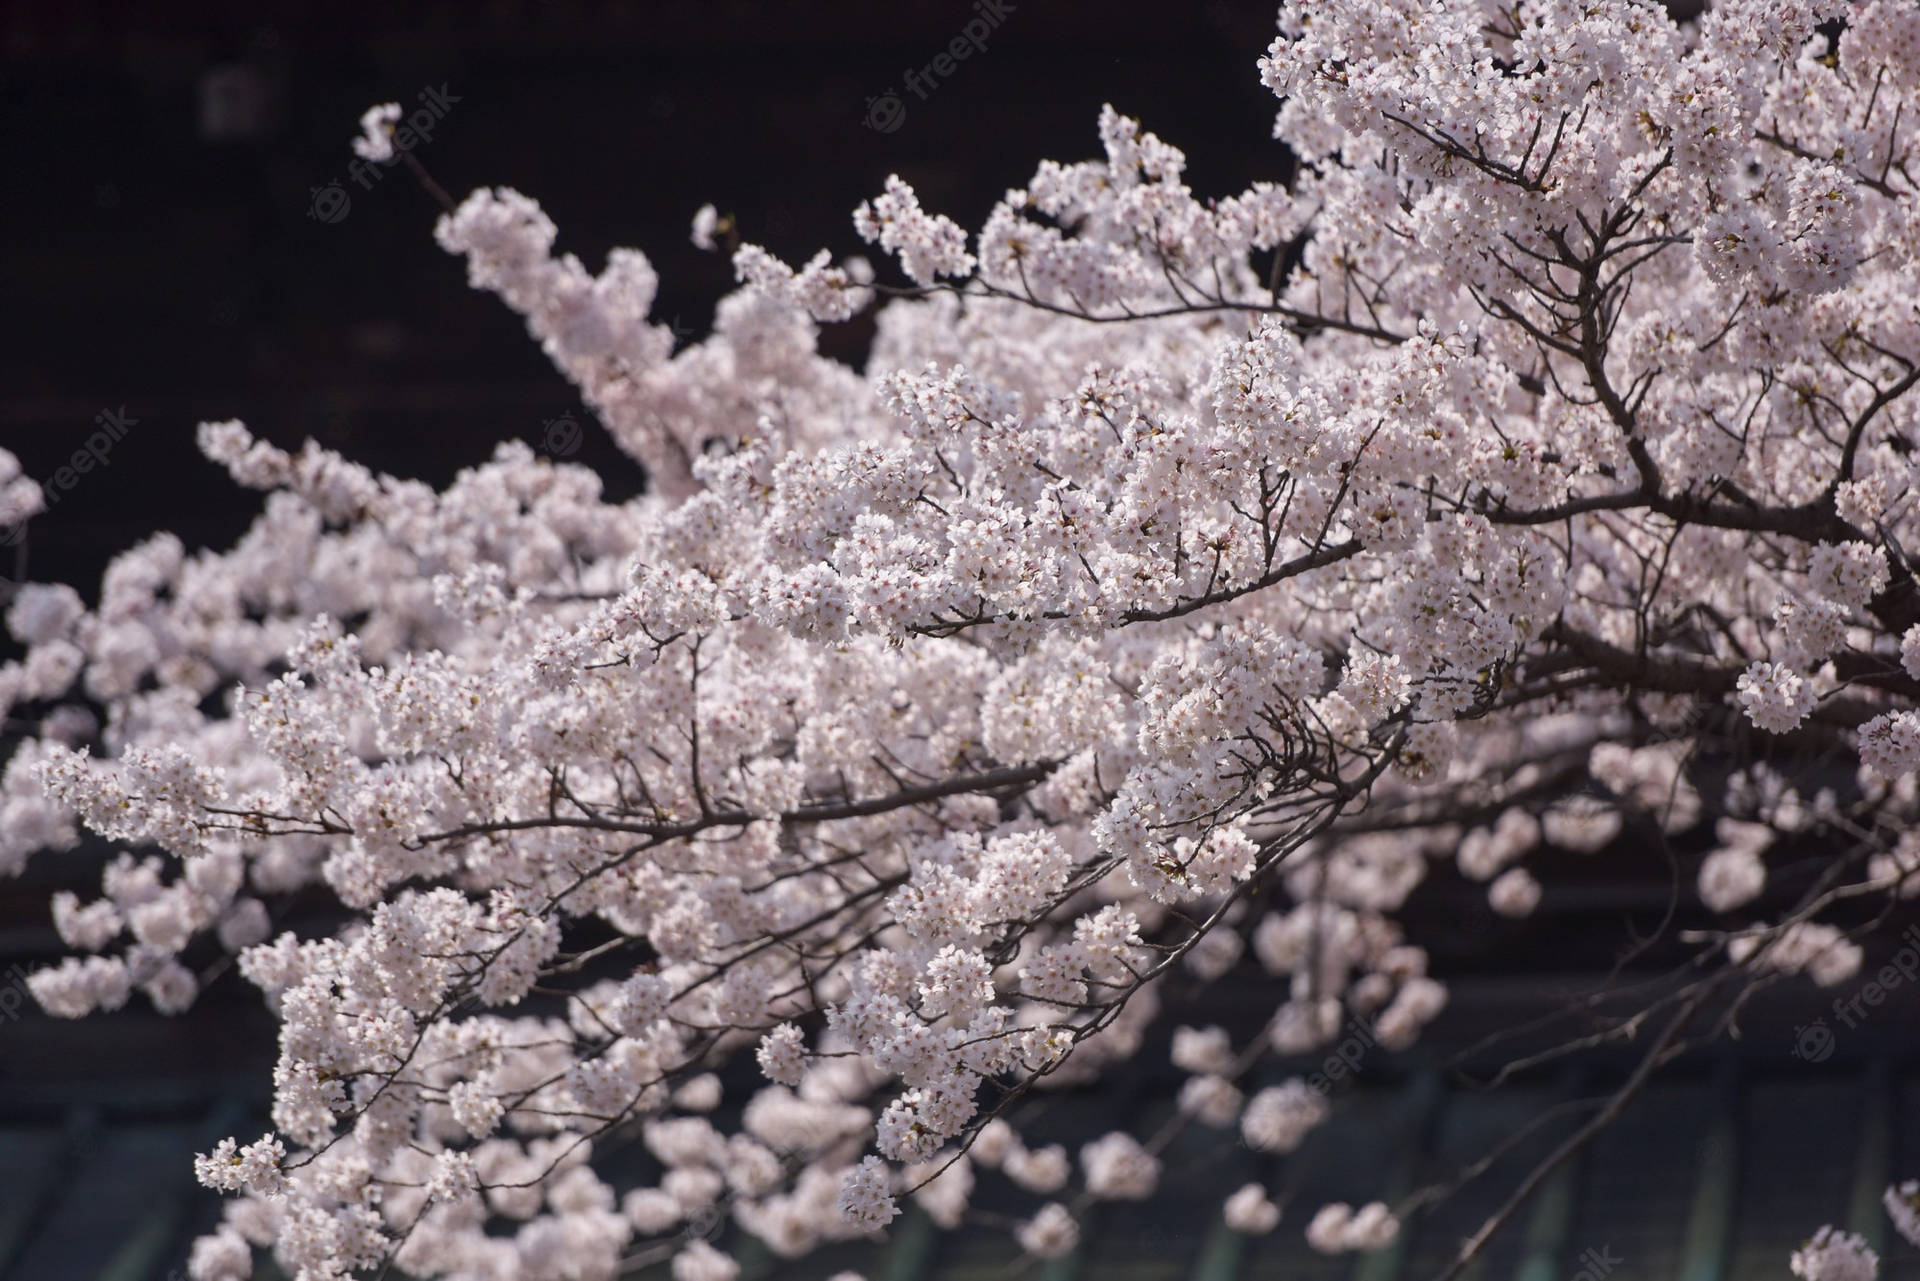 Apreciea Beleza Da Flor De Cerejeira Do Japão! Papel de Parede